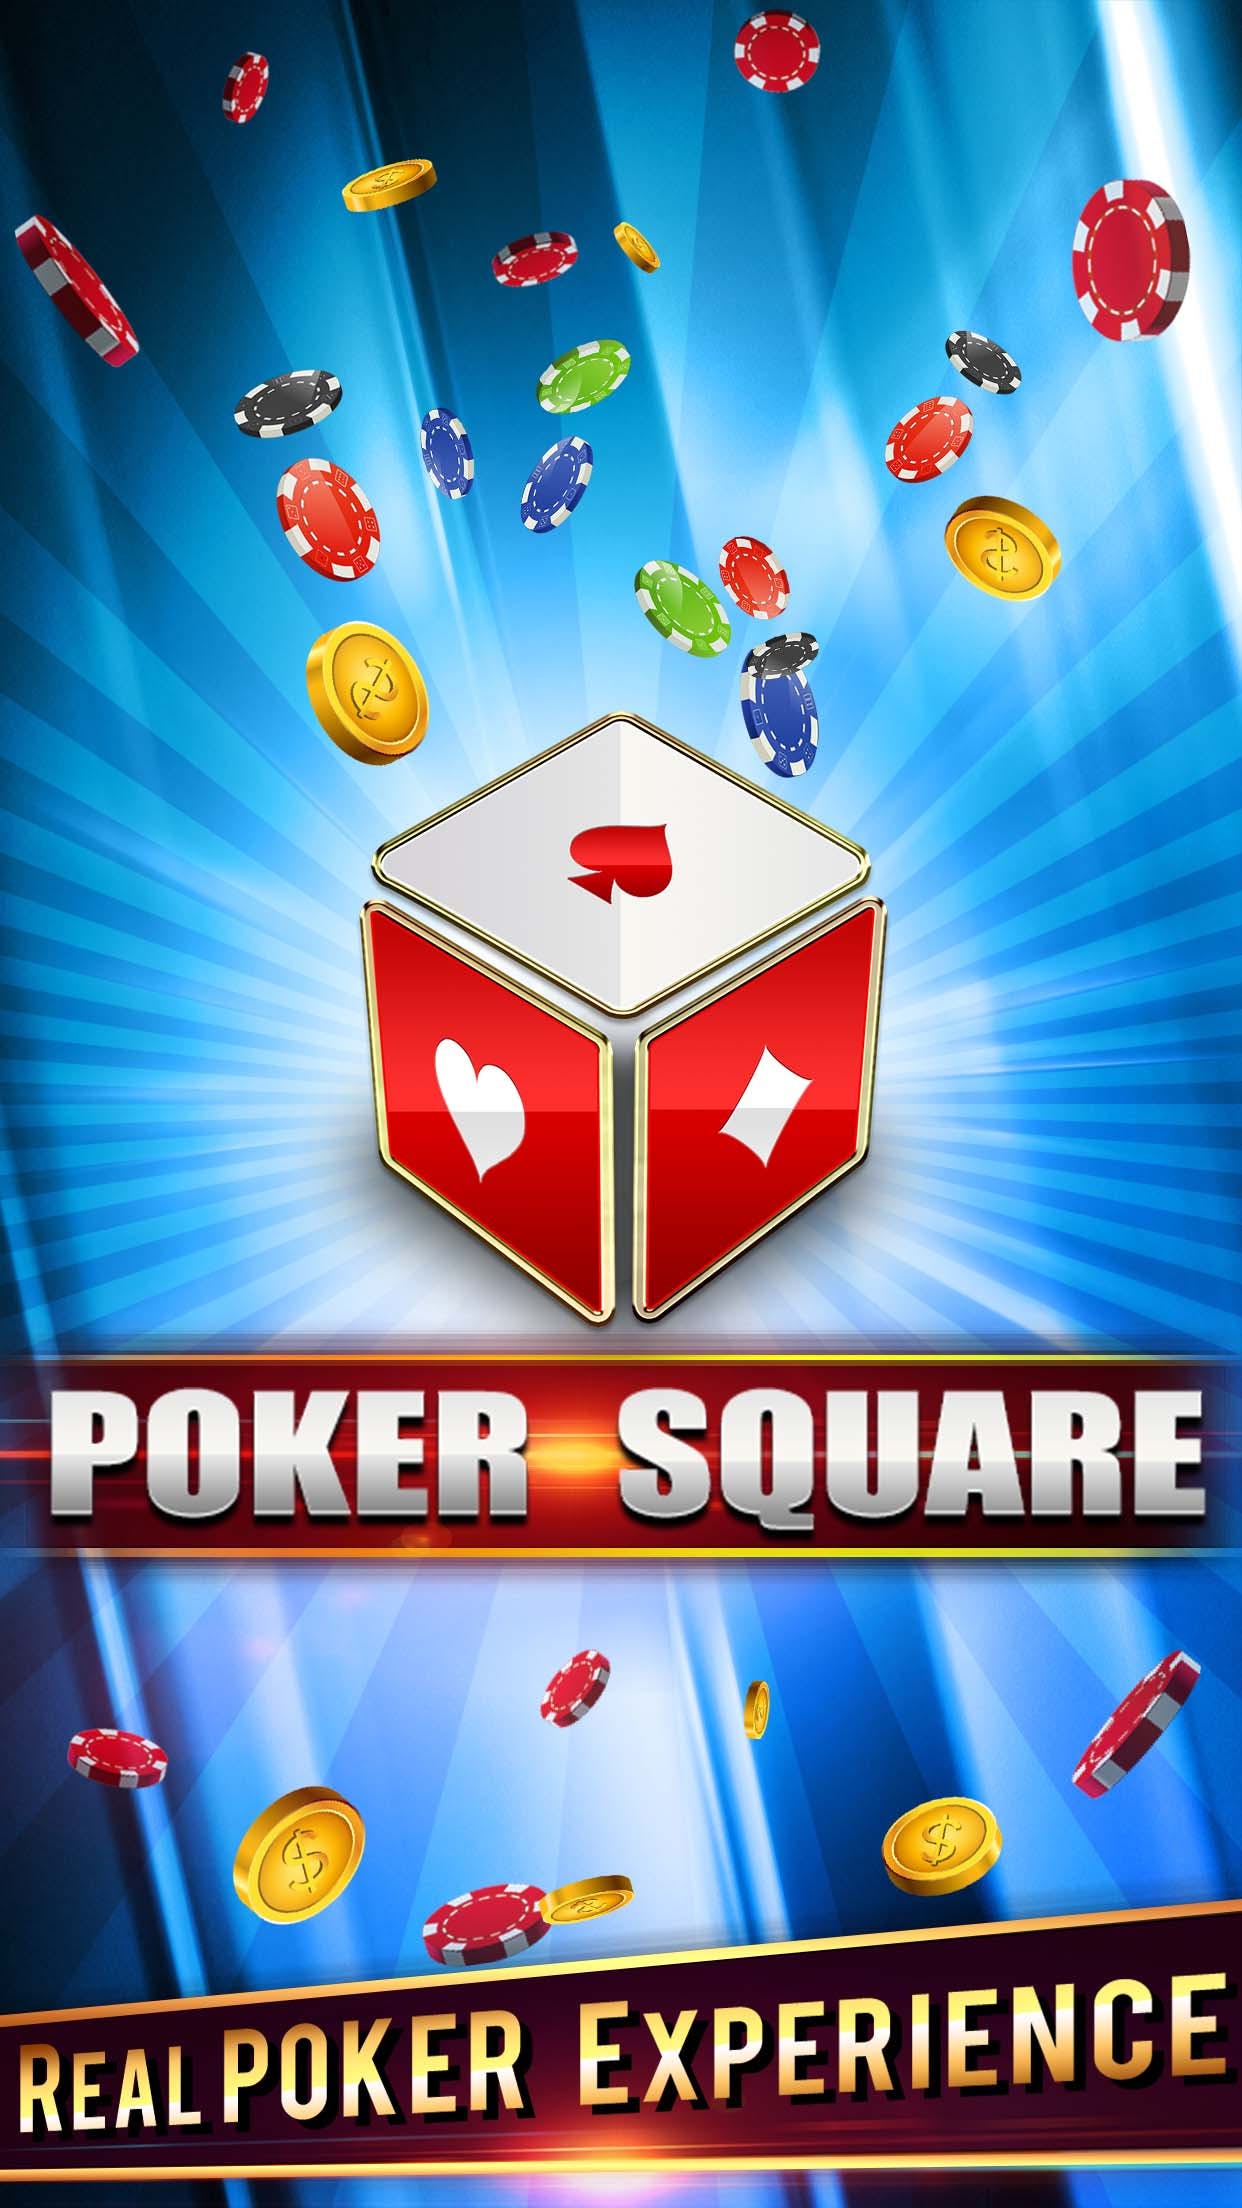 Poker Square media 2